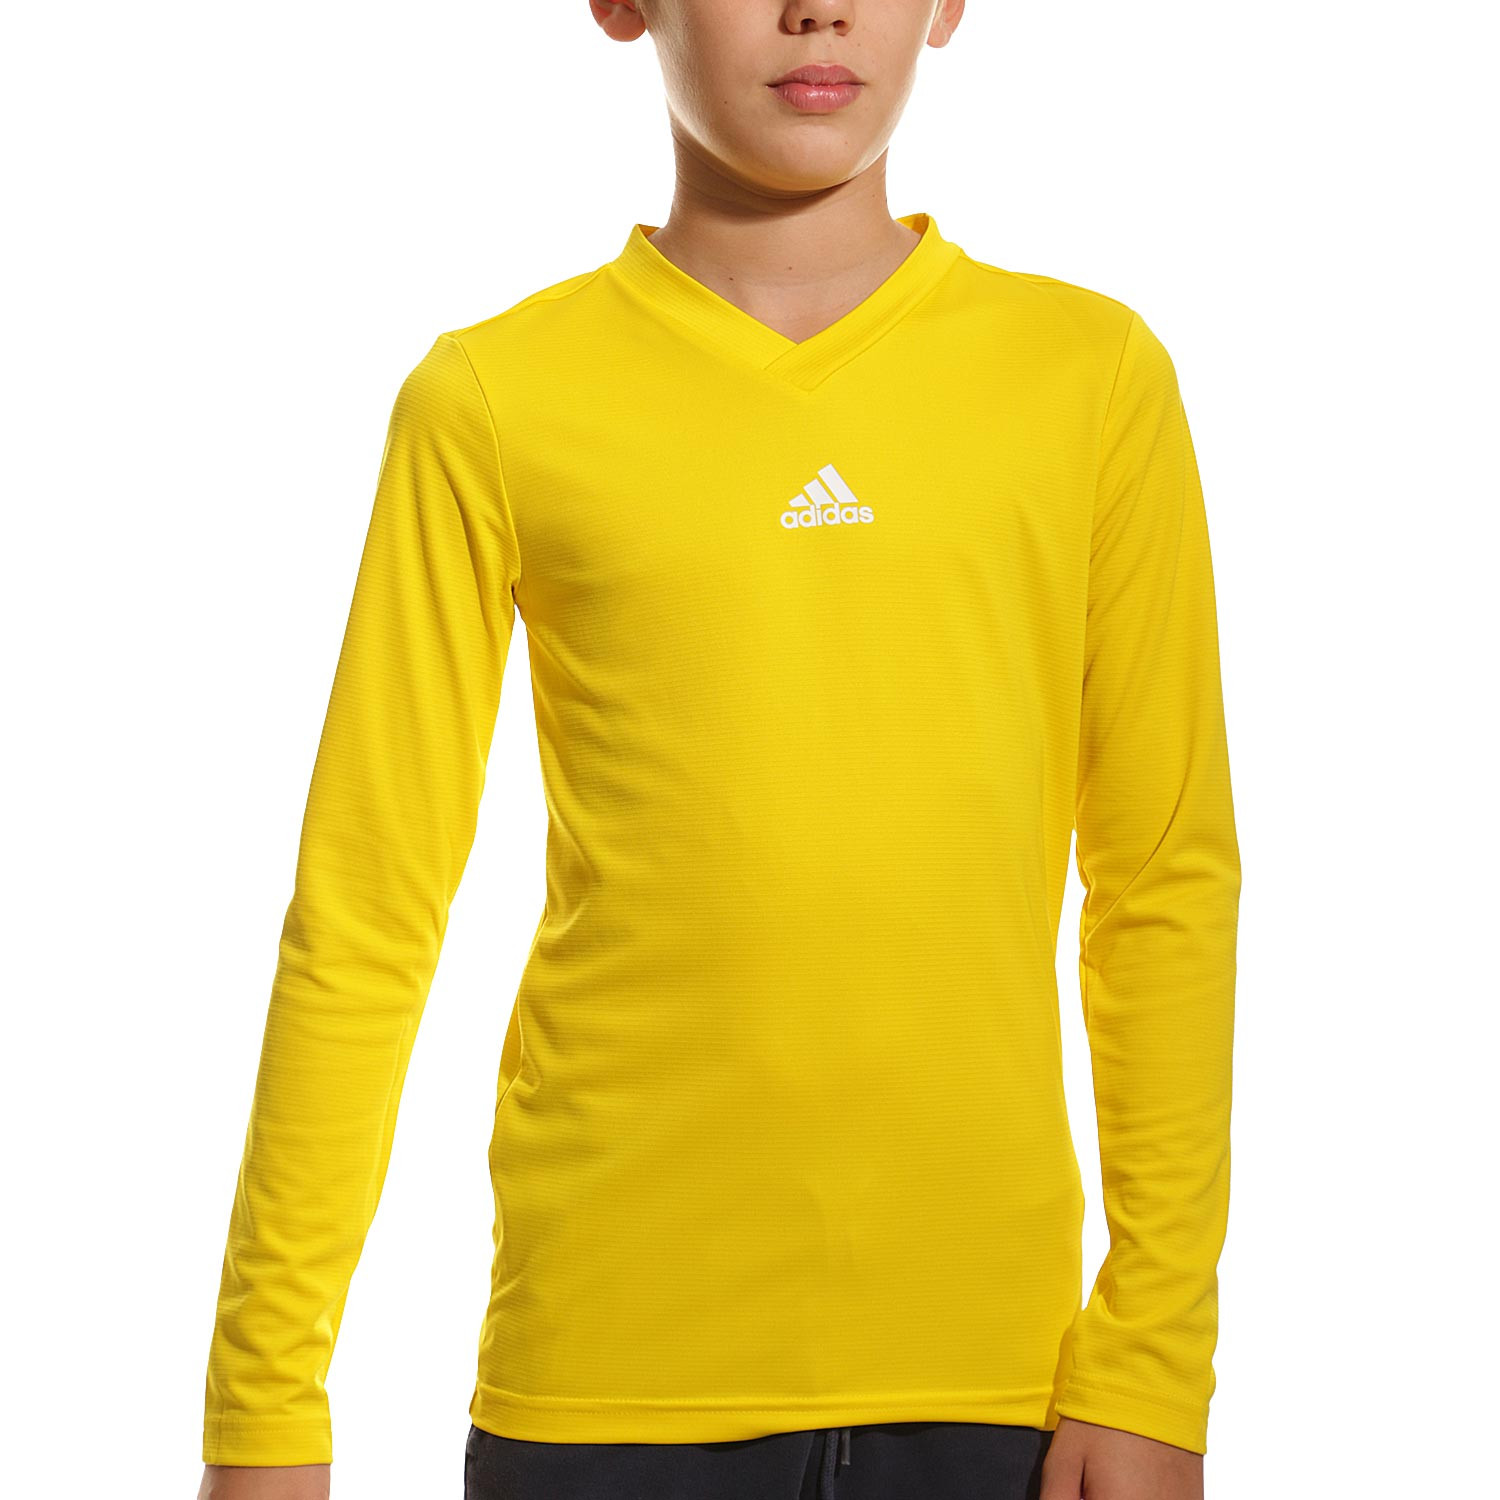 Camiseta adidas Team niño amarilla